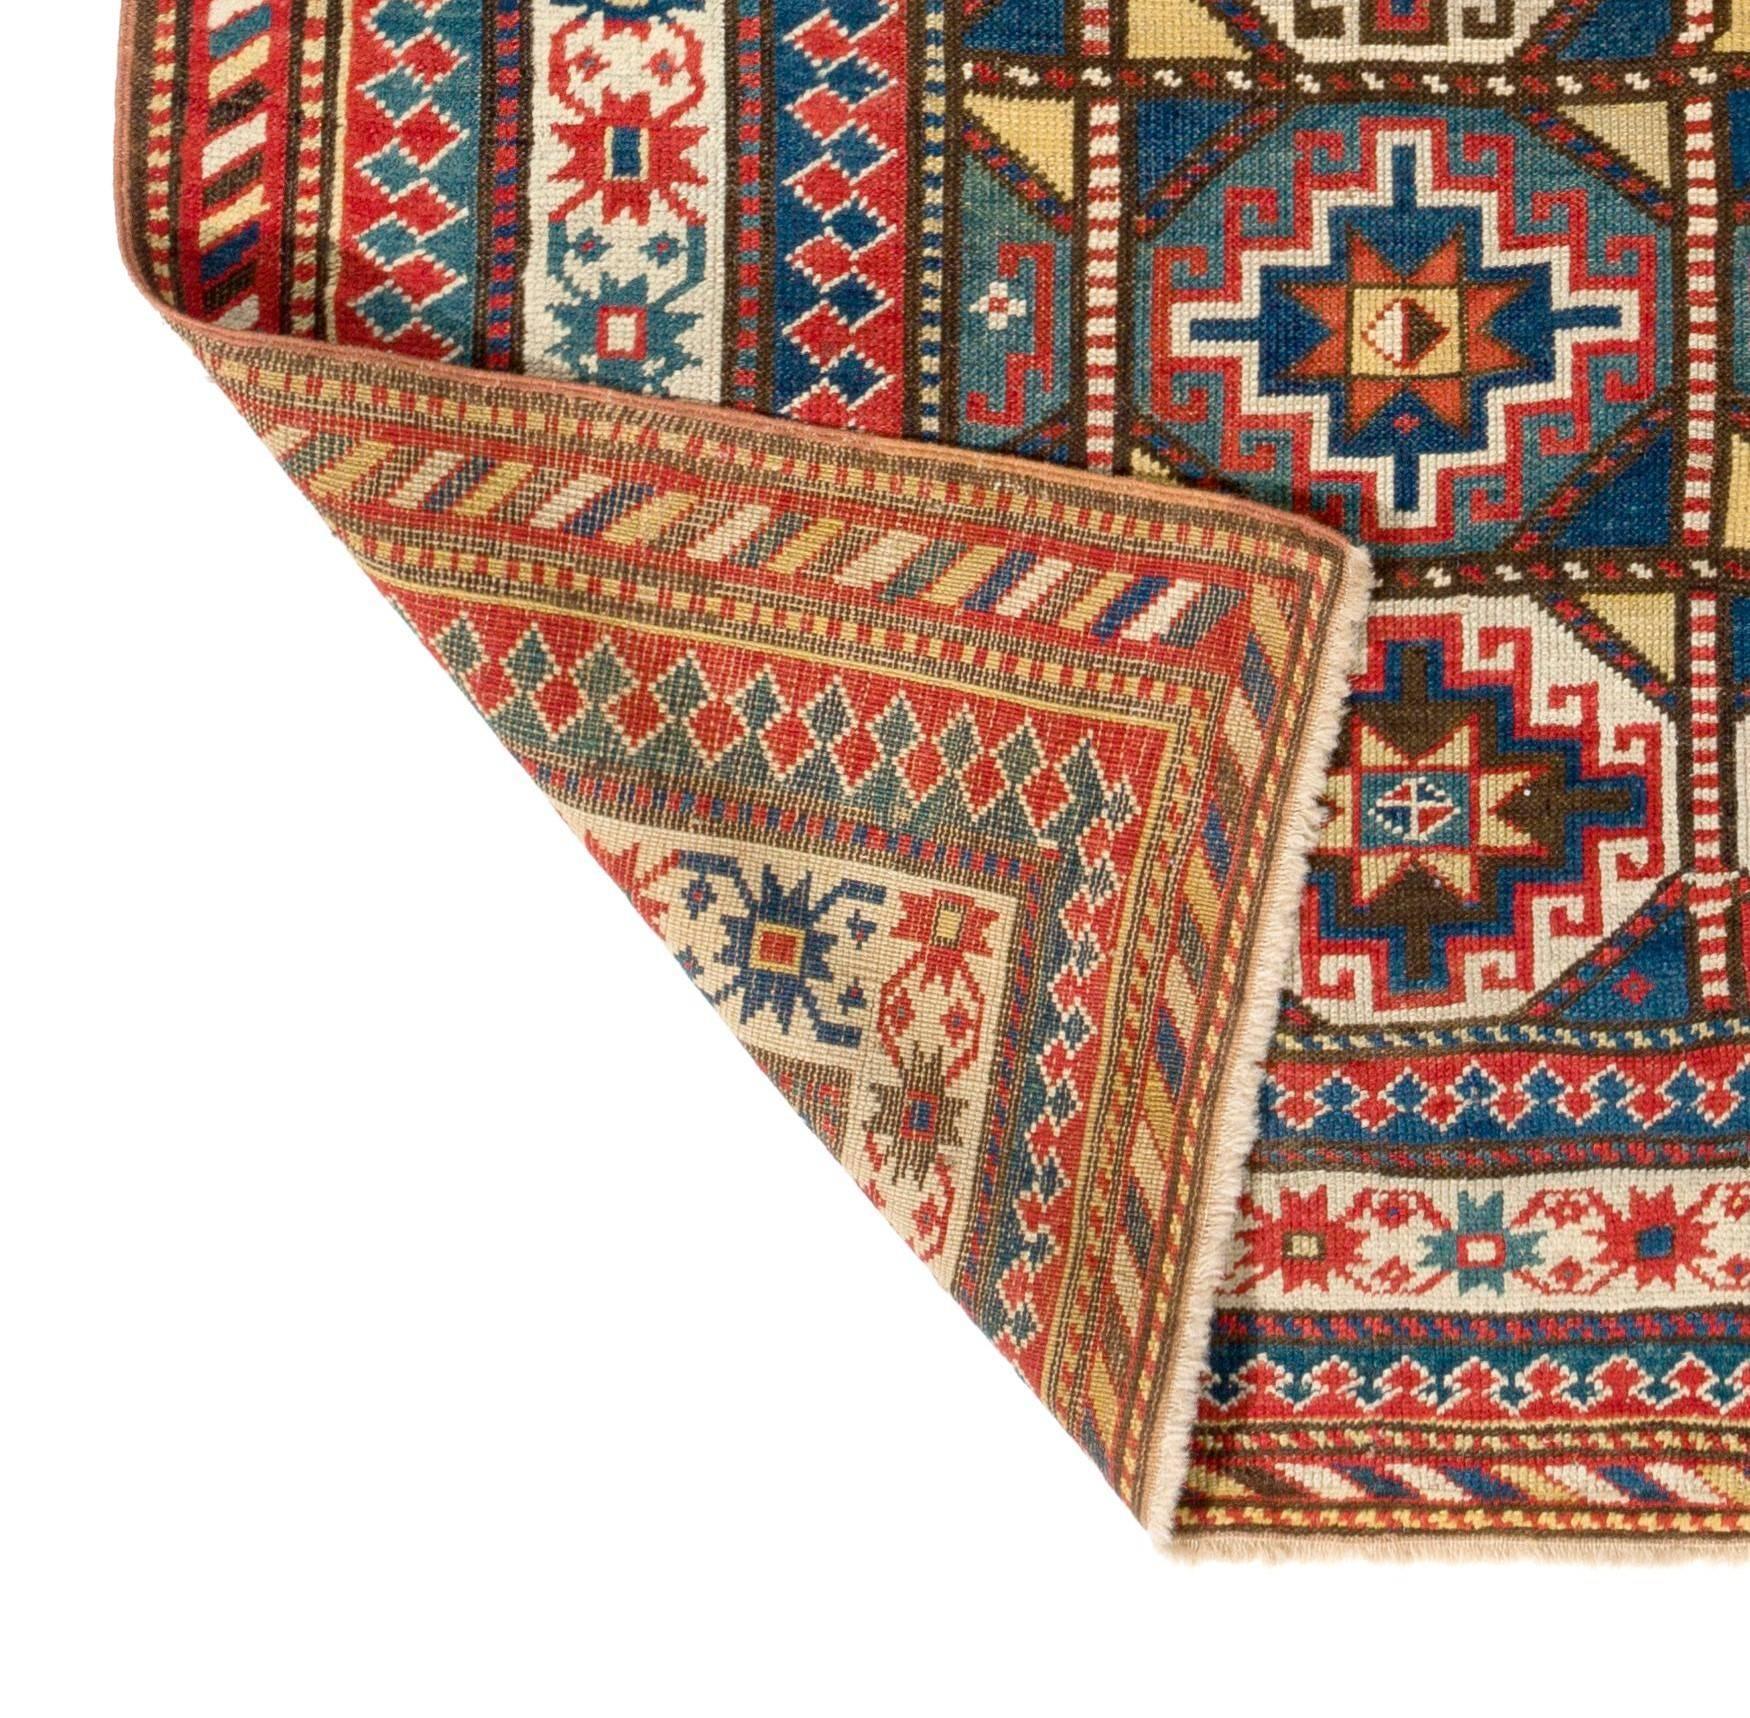 Antiker kaukasischer Gendje-Teppich, um 1875
Sehr guter Zustand, 100% Wolle und alle natürlichen Farbstoffe.